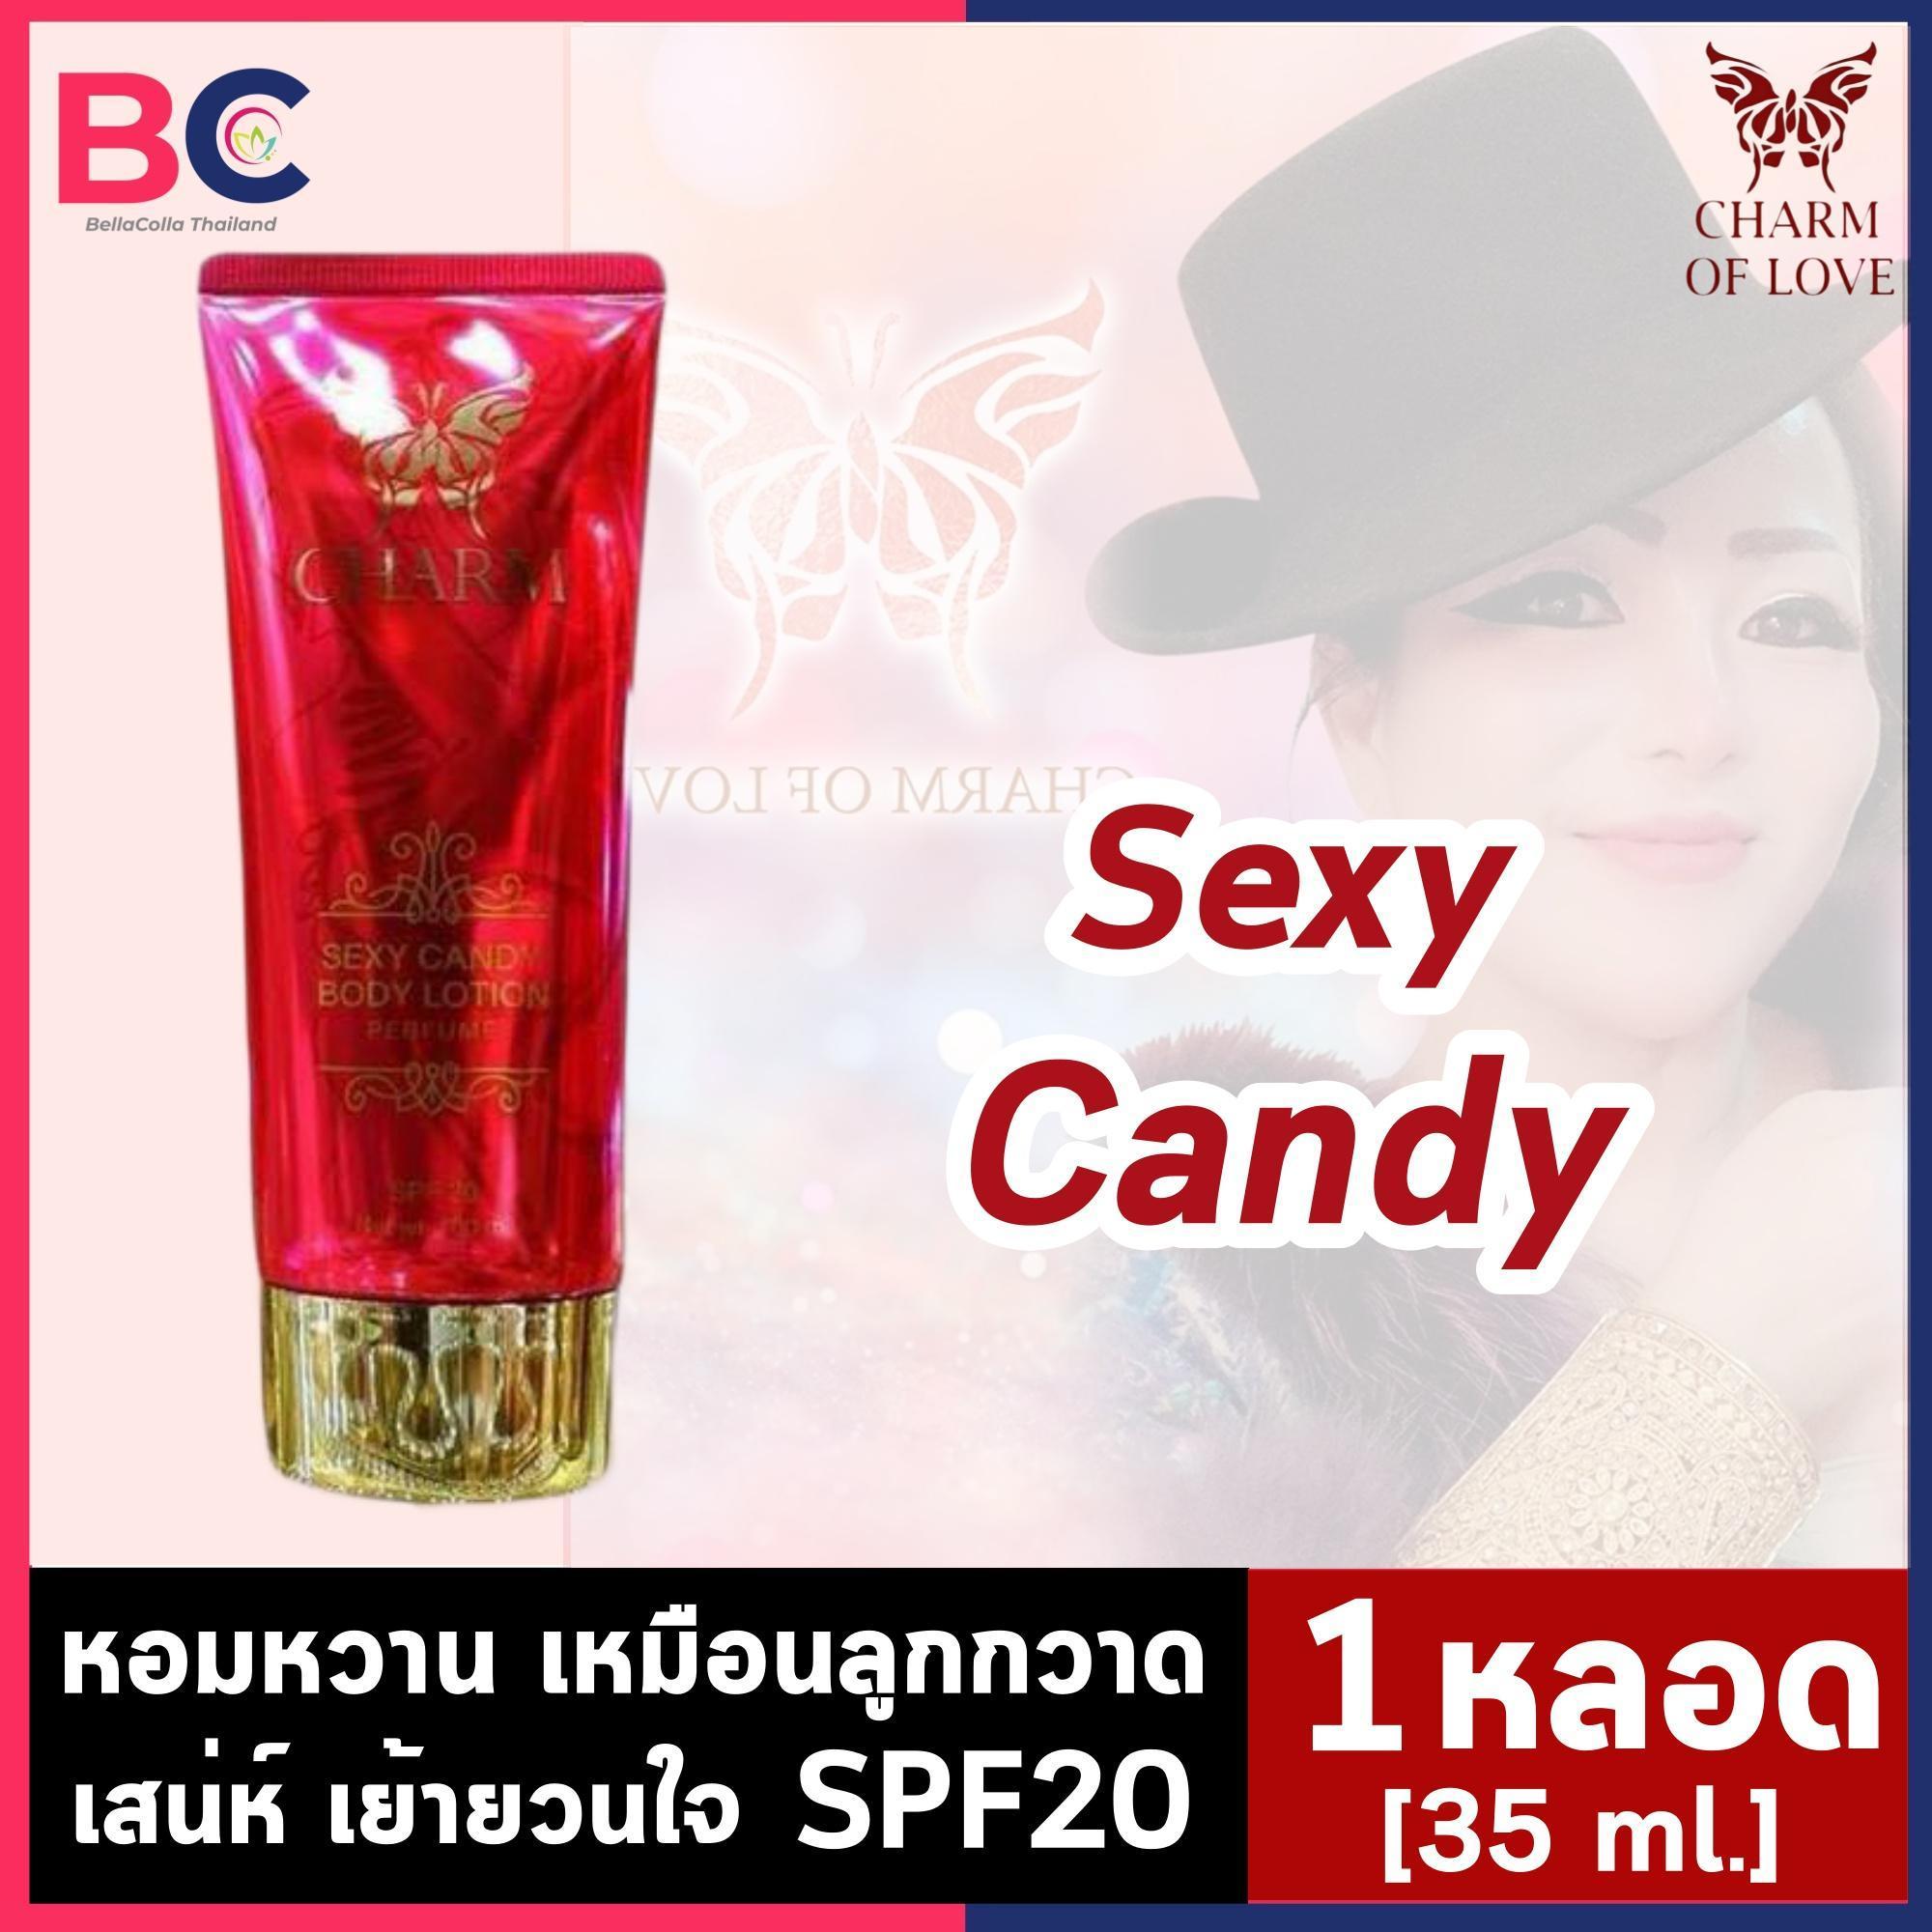 โลชั่นน้ําหอม charm of love [35 ml.] [กลิ่น CANDY - สีแดง] Body Lotion Perfume บำรุงผิว กันแดด โลชั่นน้ําหอมฟีโรโมน by BellaColla Thailand